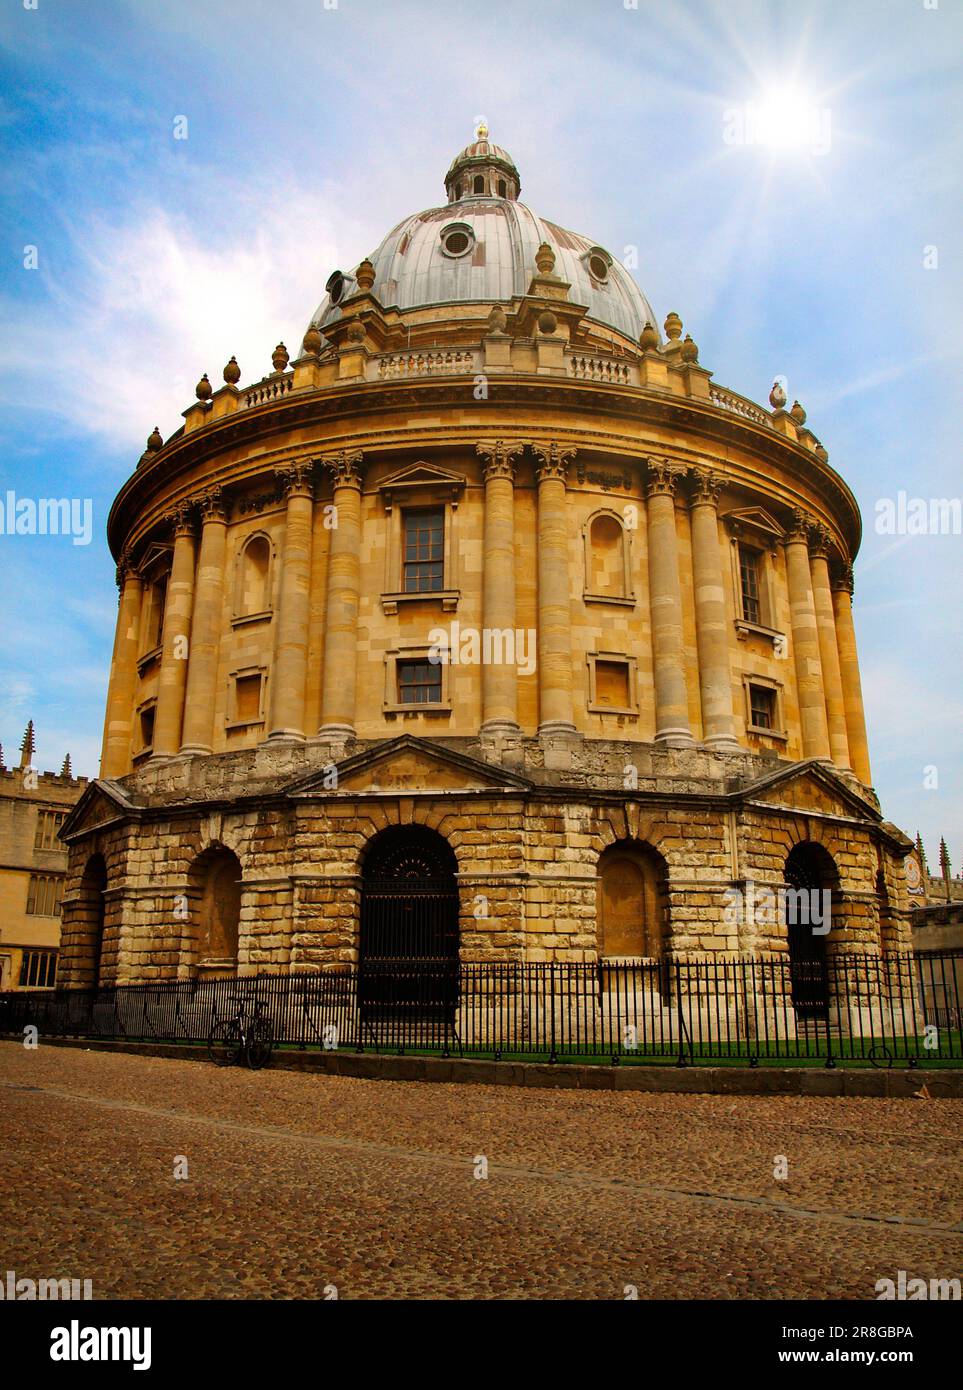 La caméra Dr John Radclffe, construite en 1737-1749 dans le cadre de l'université d'Oxford et de la bibliothèque scientifique Bodleian, conçue par James Giibbs dans le système palladien Banque D'Images